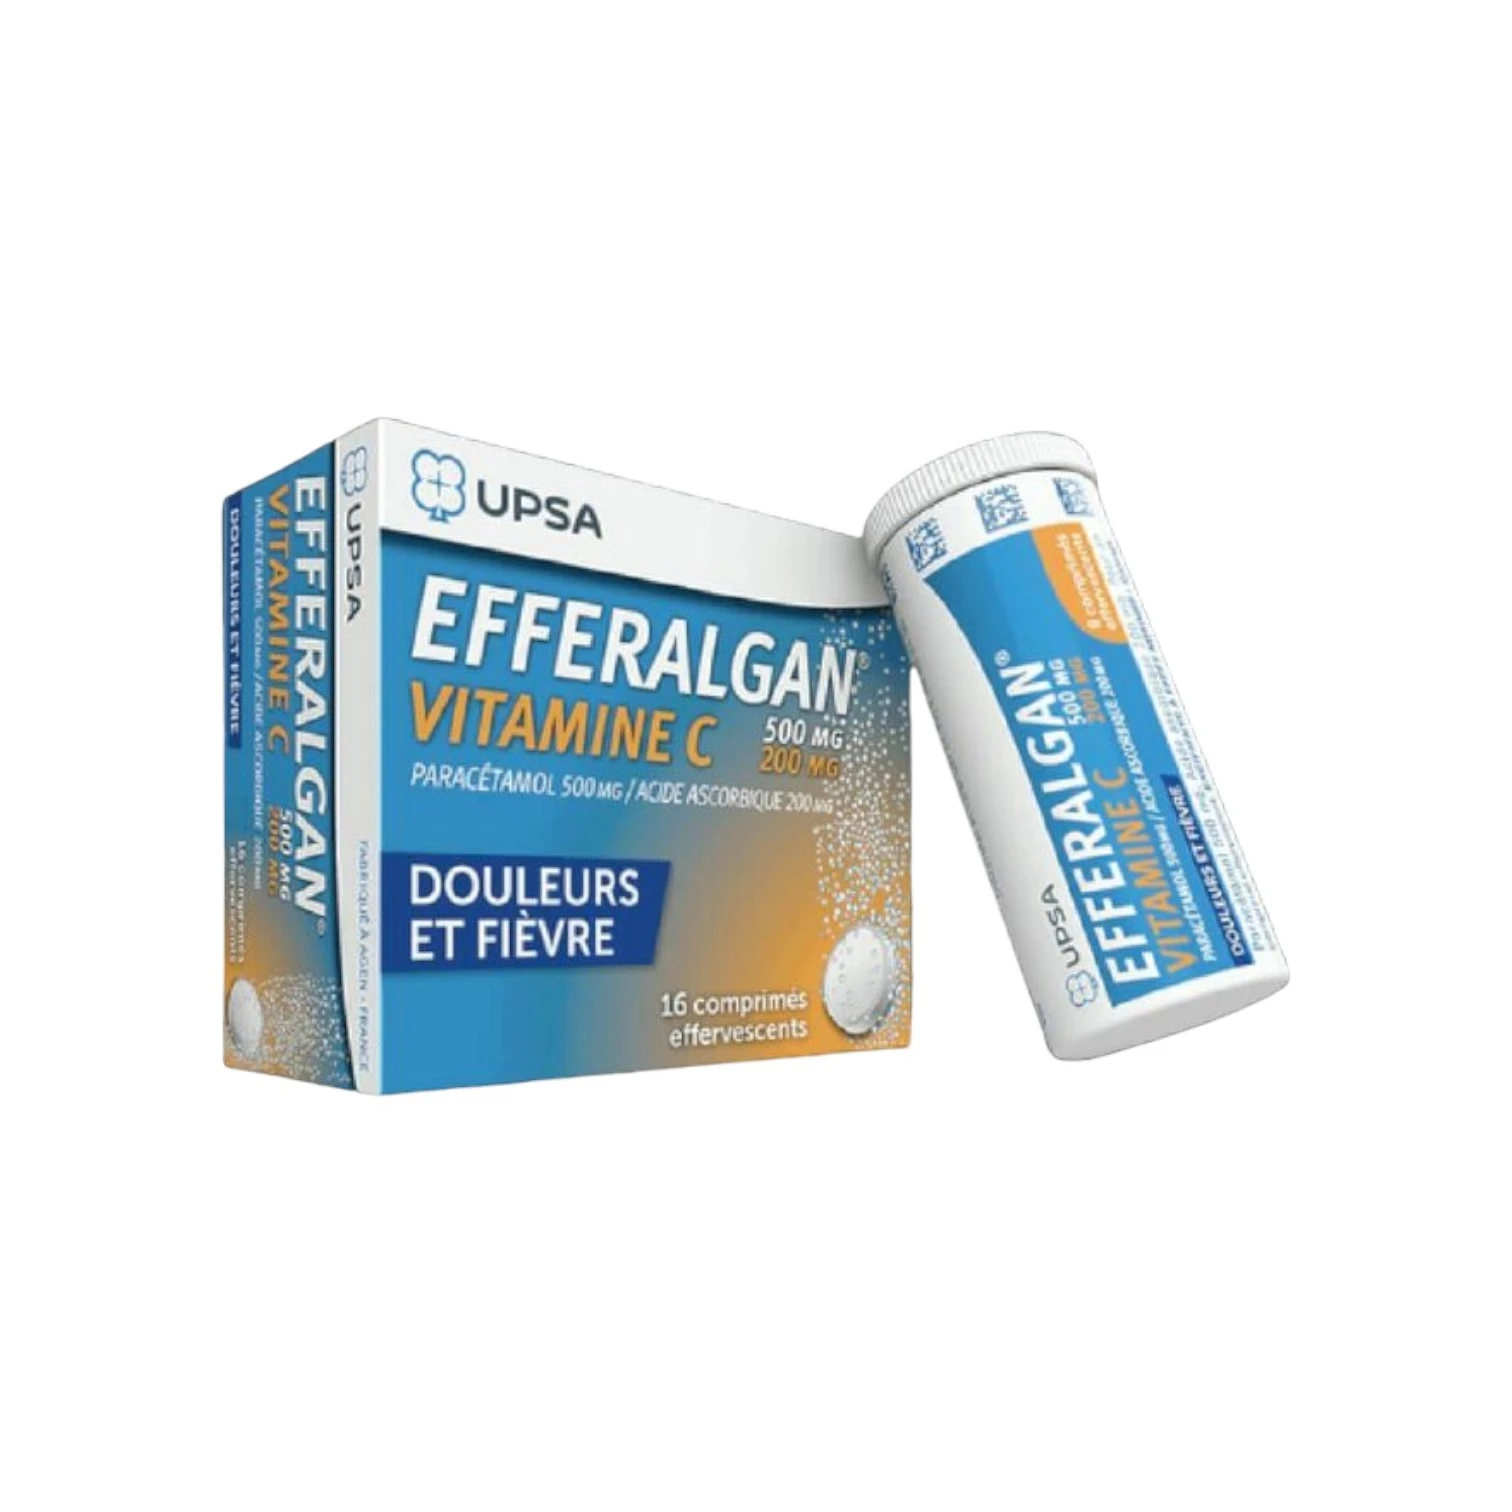 EFFERALGAN Vitamin C 500mg/200mg 8Eff x 2Tube (CP)